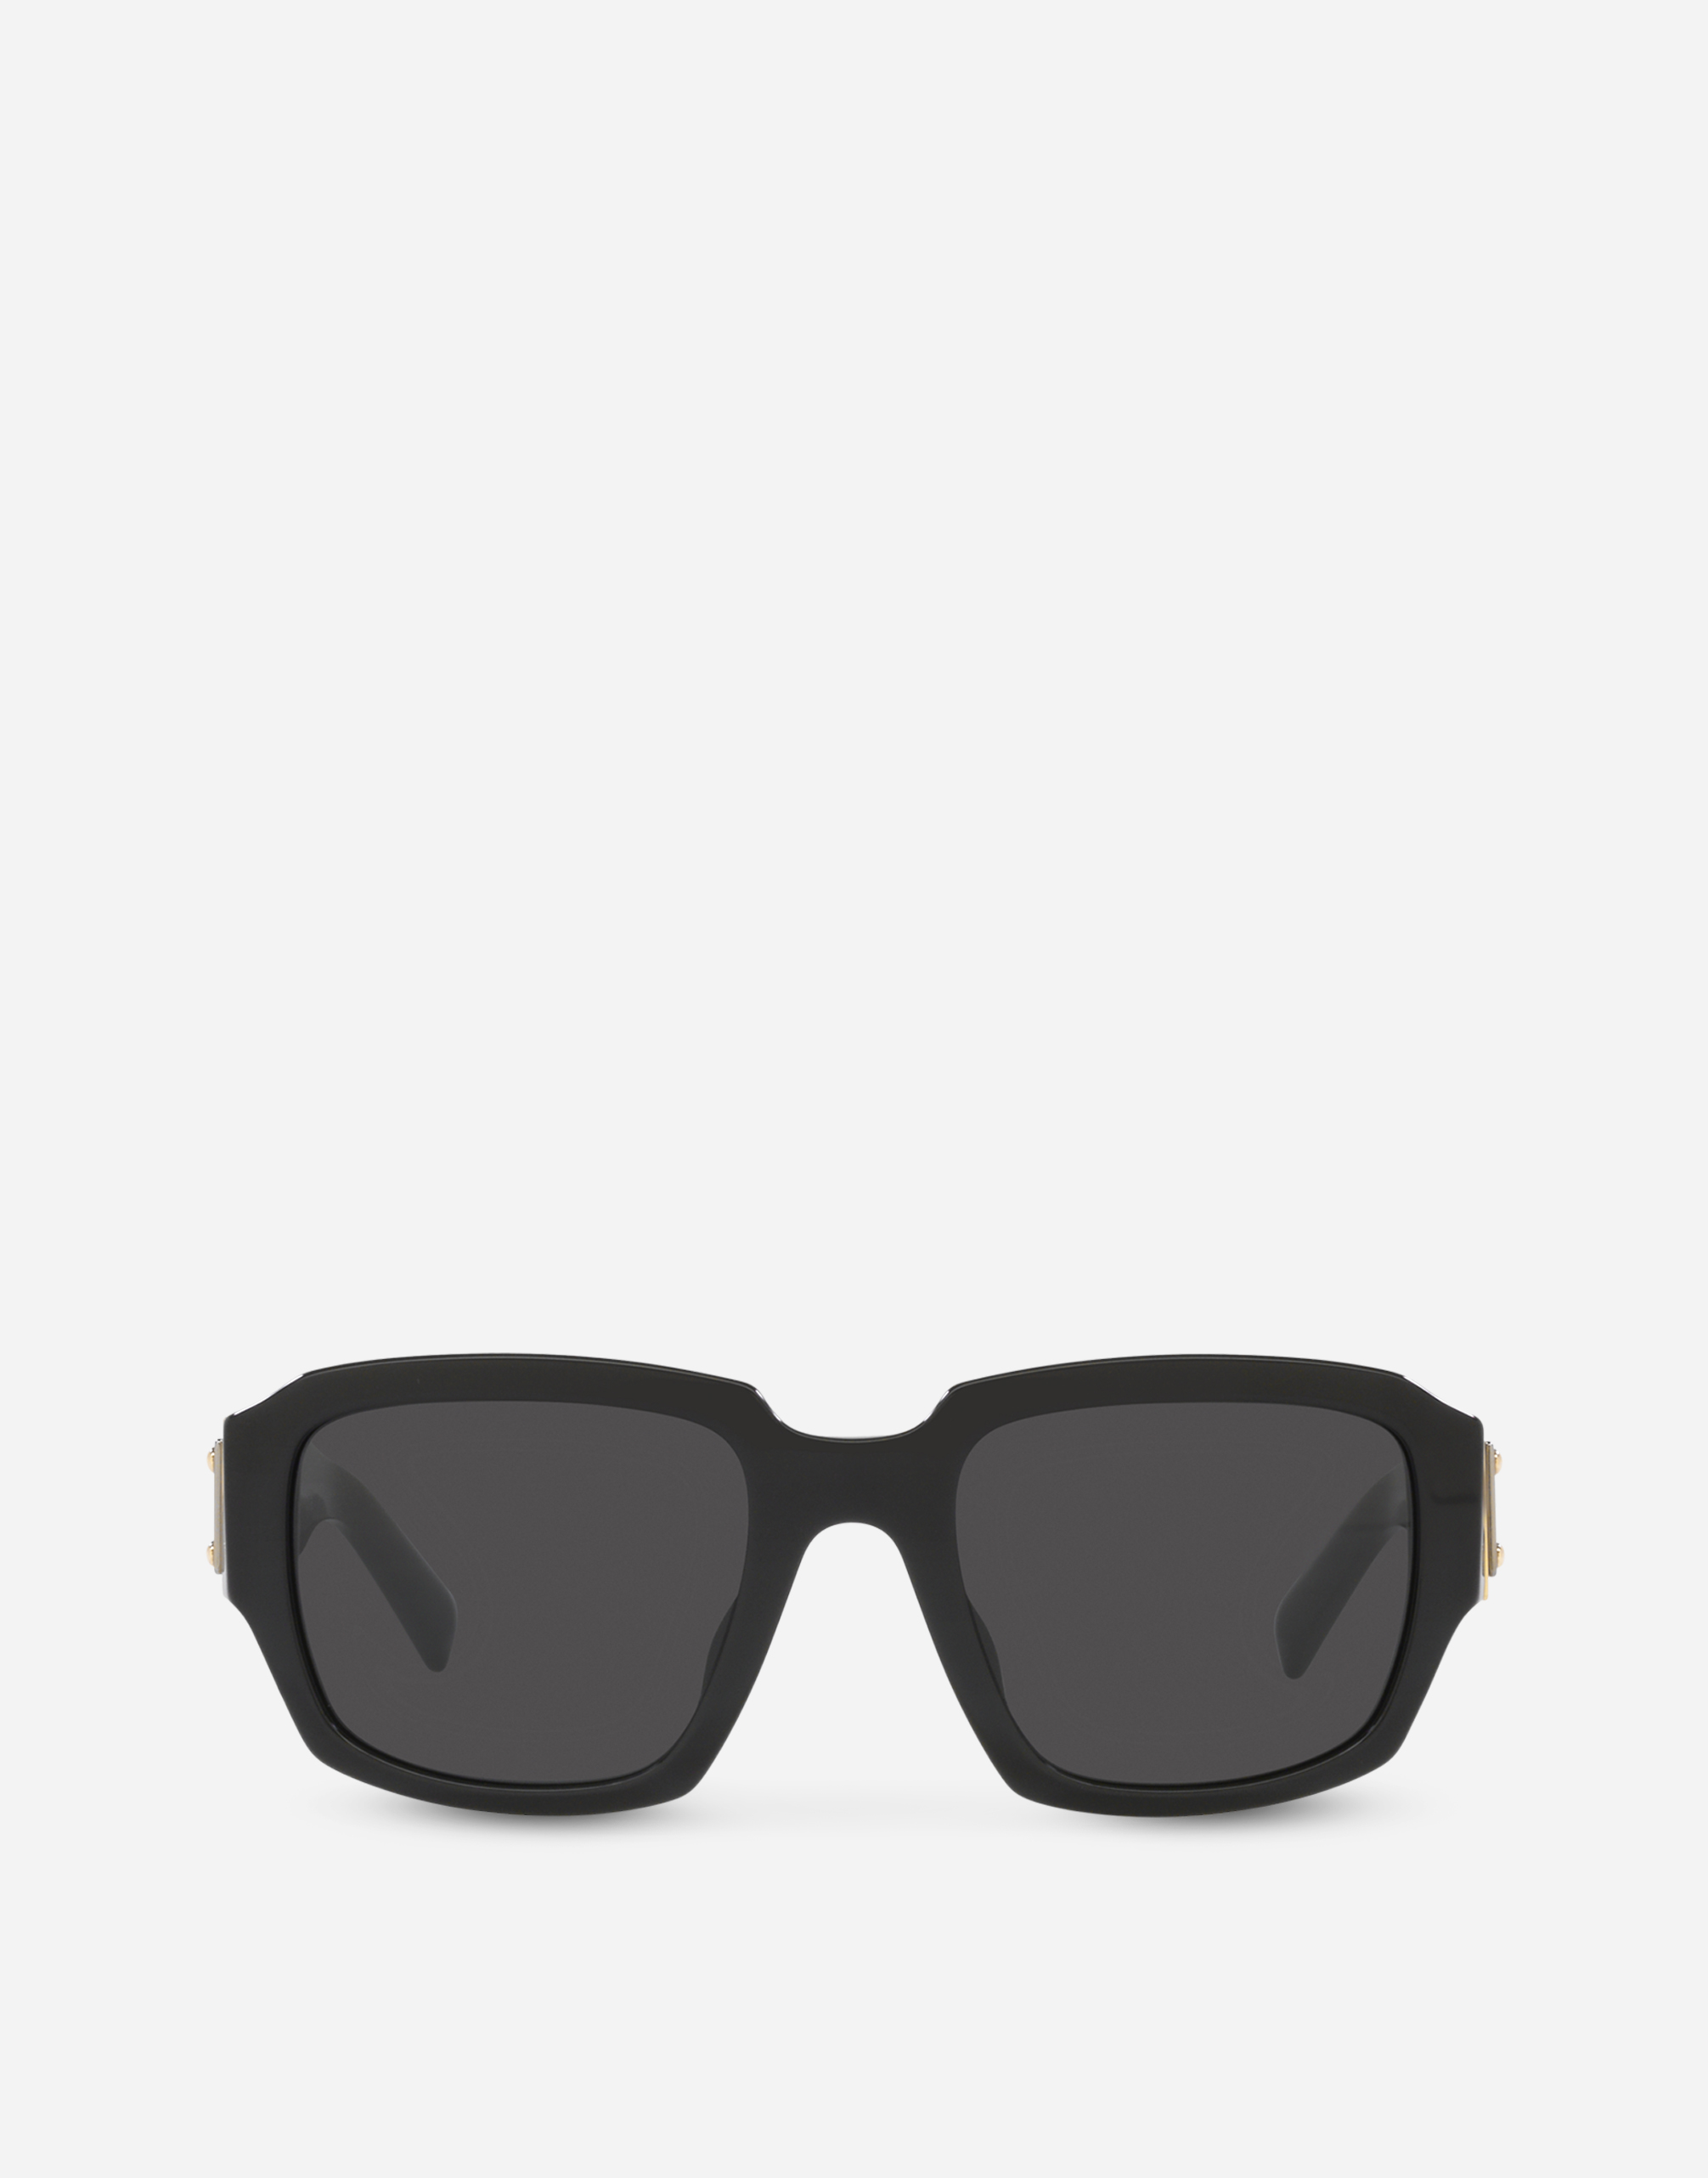 Placchetta Sunglasses in Black